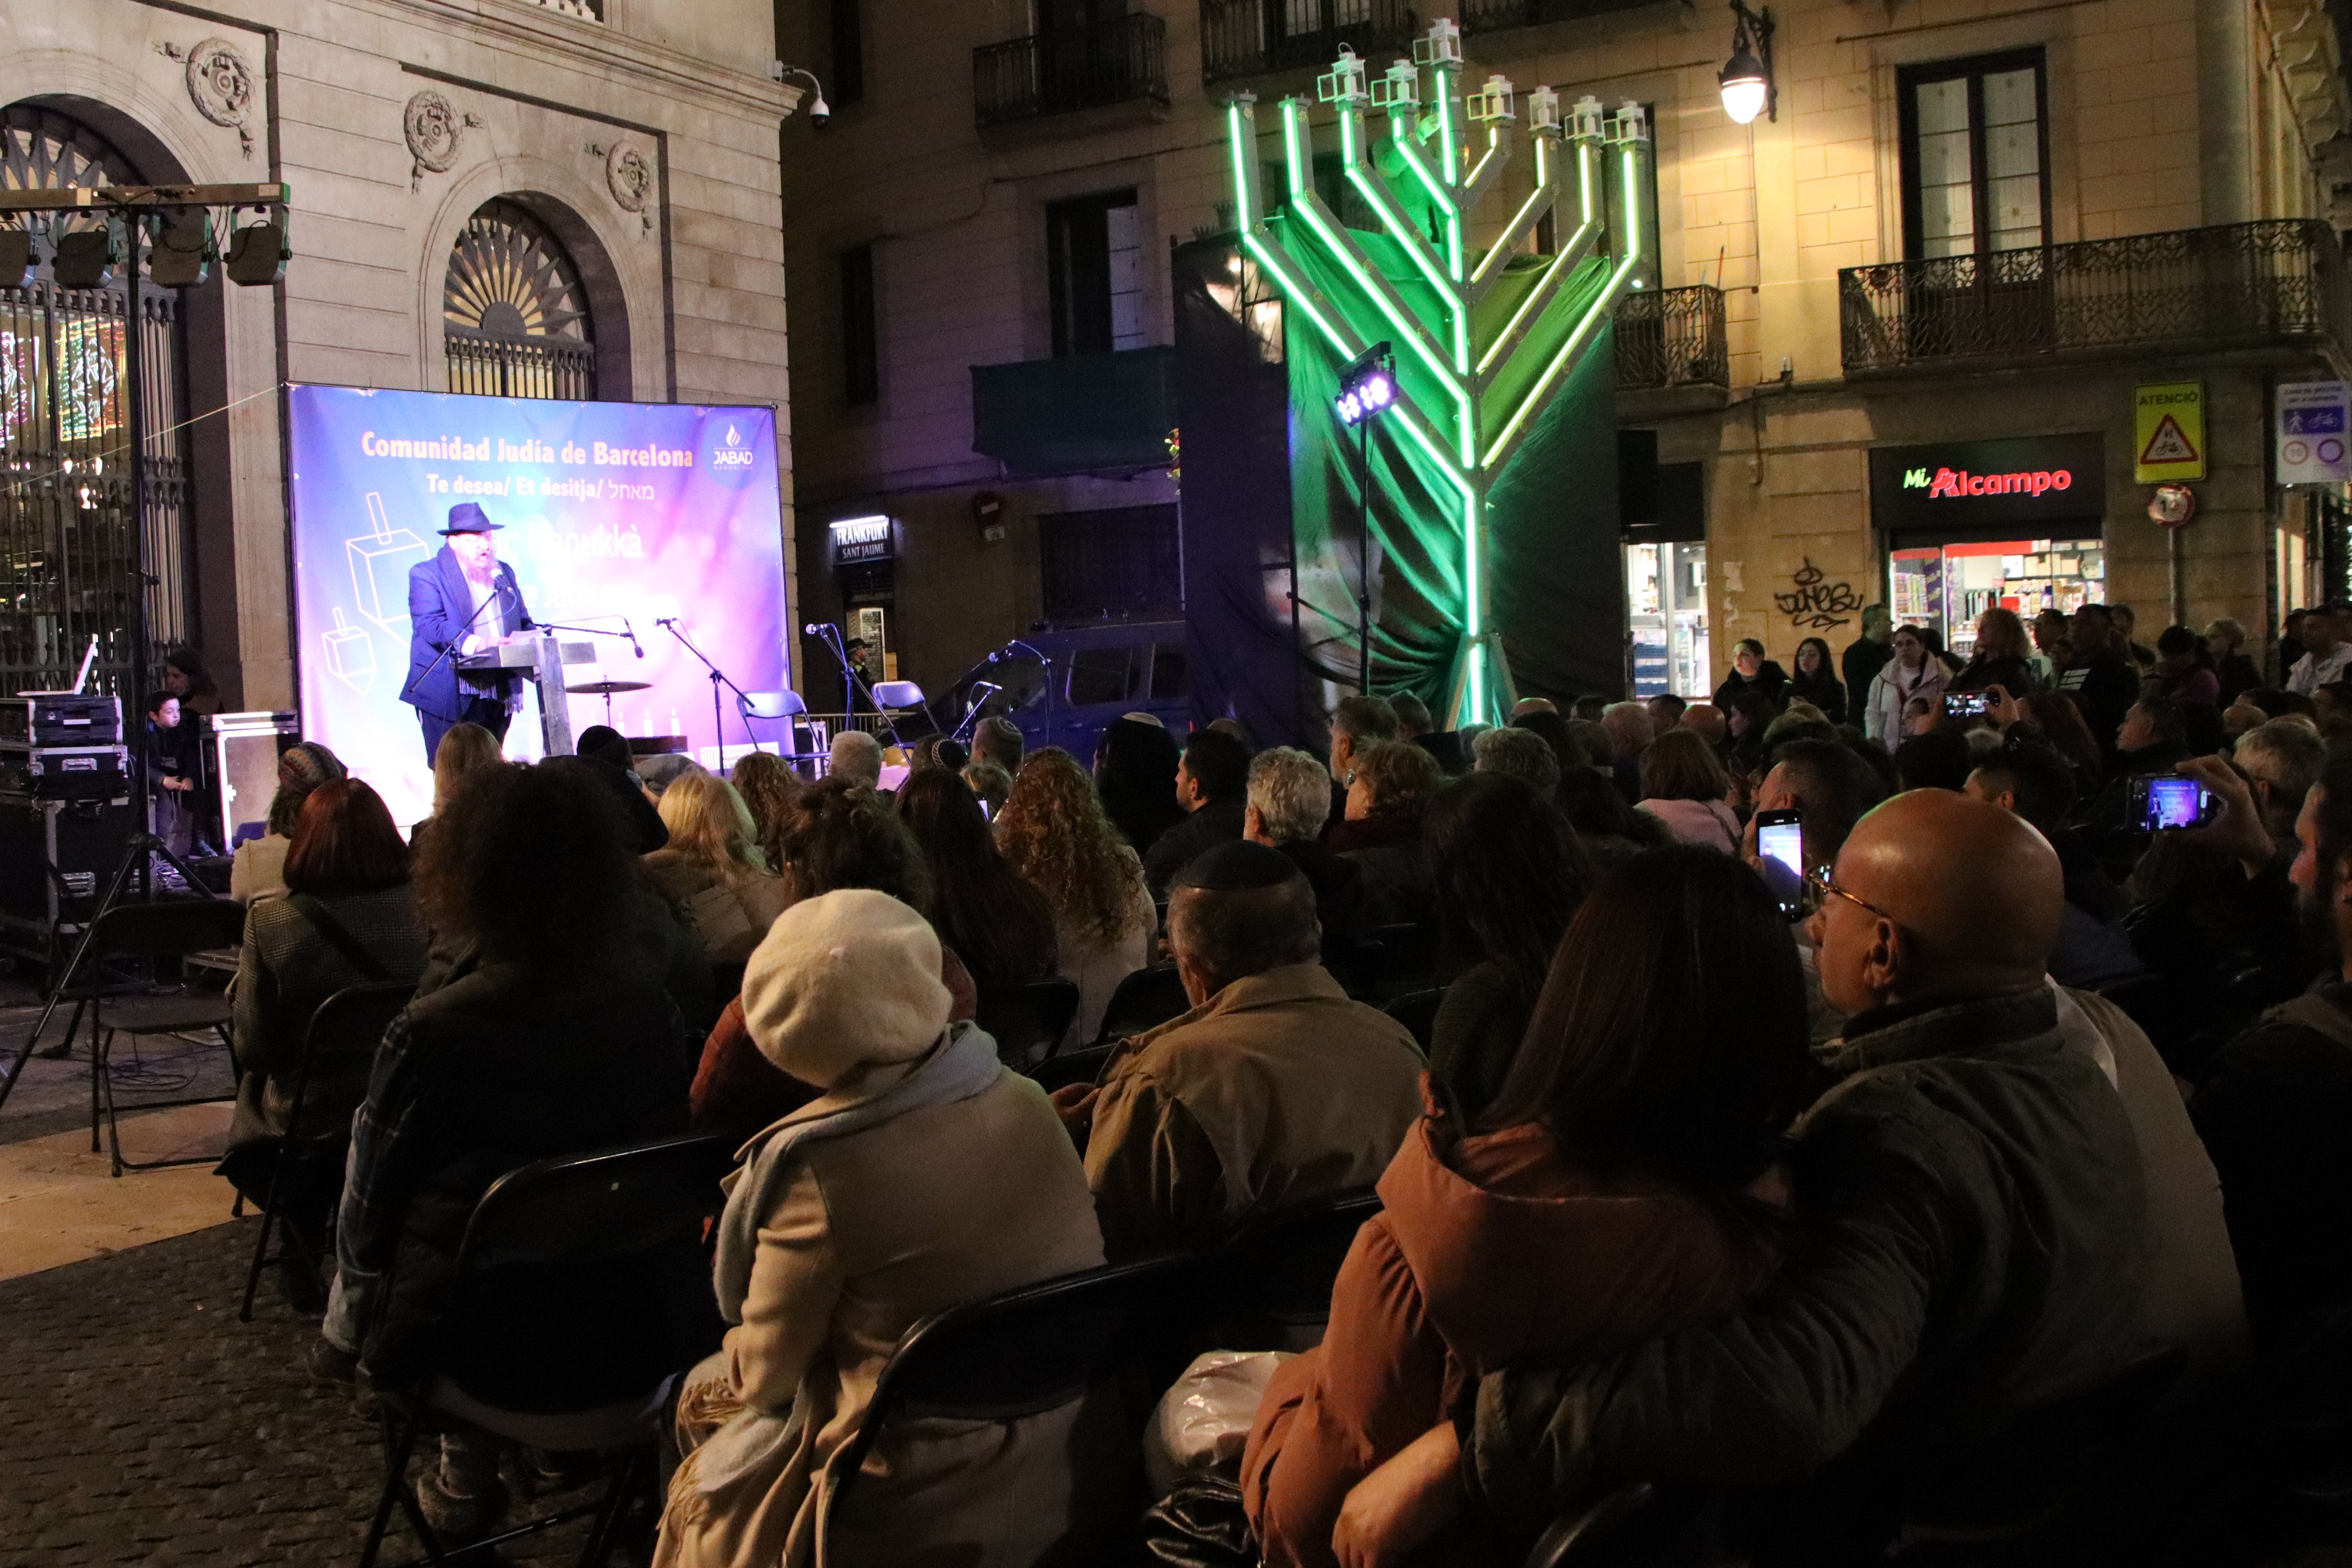 La comunitat jueva agraeix a Barcelona que reforci el compromís contra l’antisemitisme